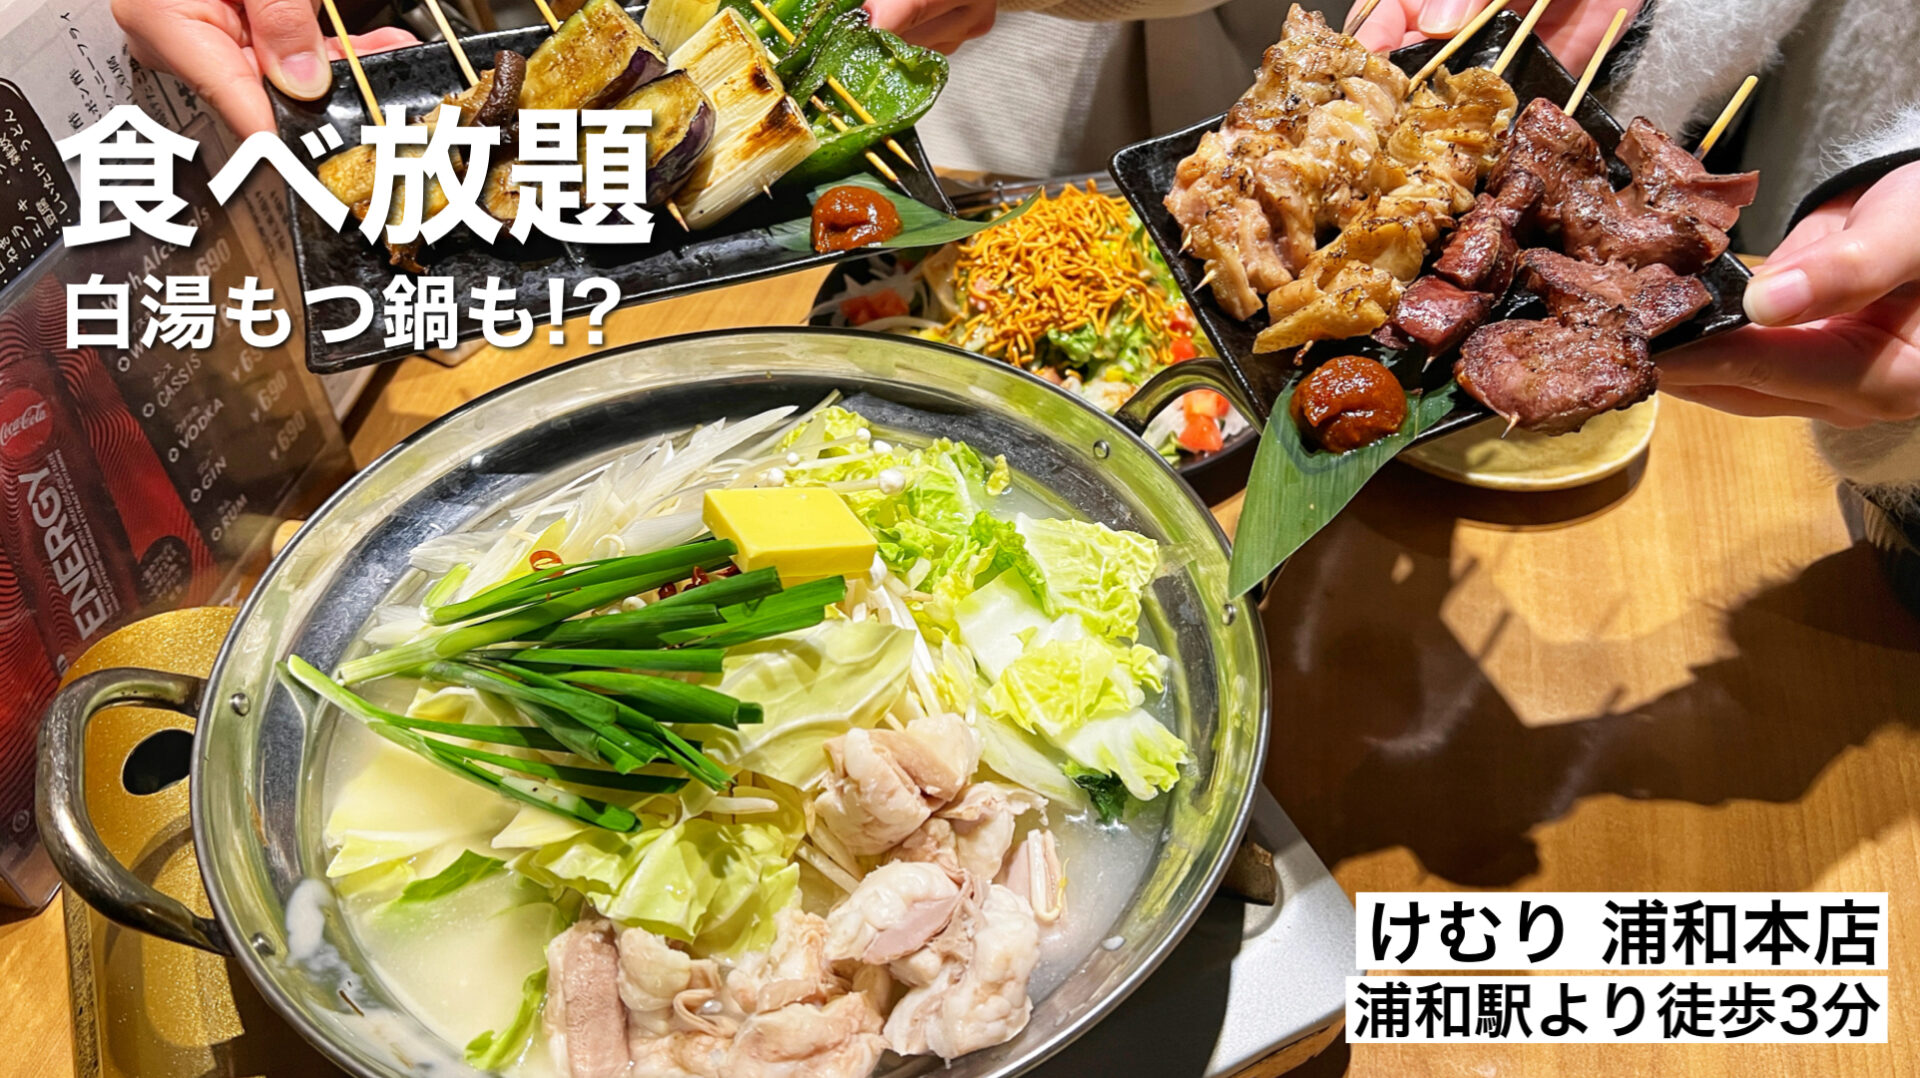 焼き鳥食べ放題が2750円から「けむり 浦和本店」白湯もつ鍋にスイーツも充実してた